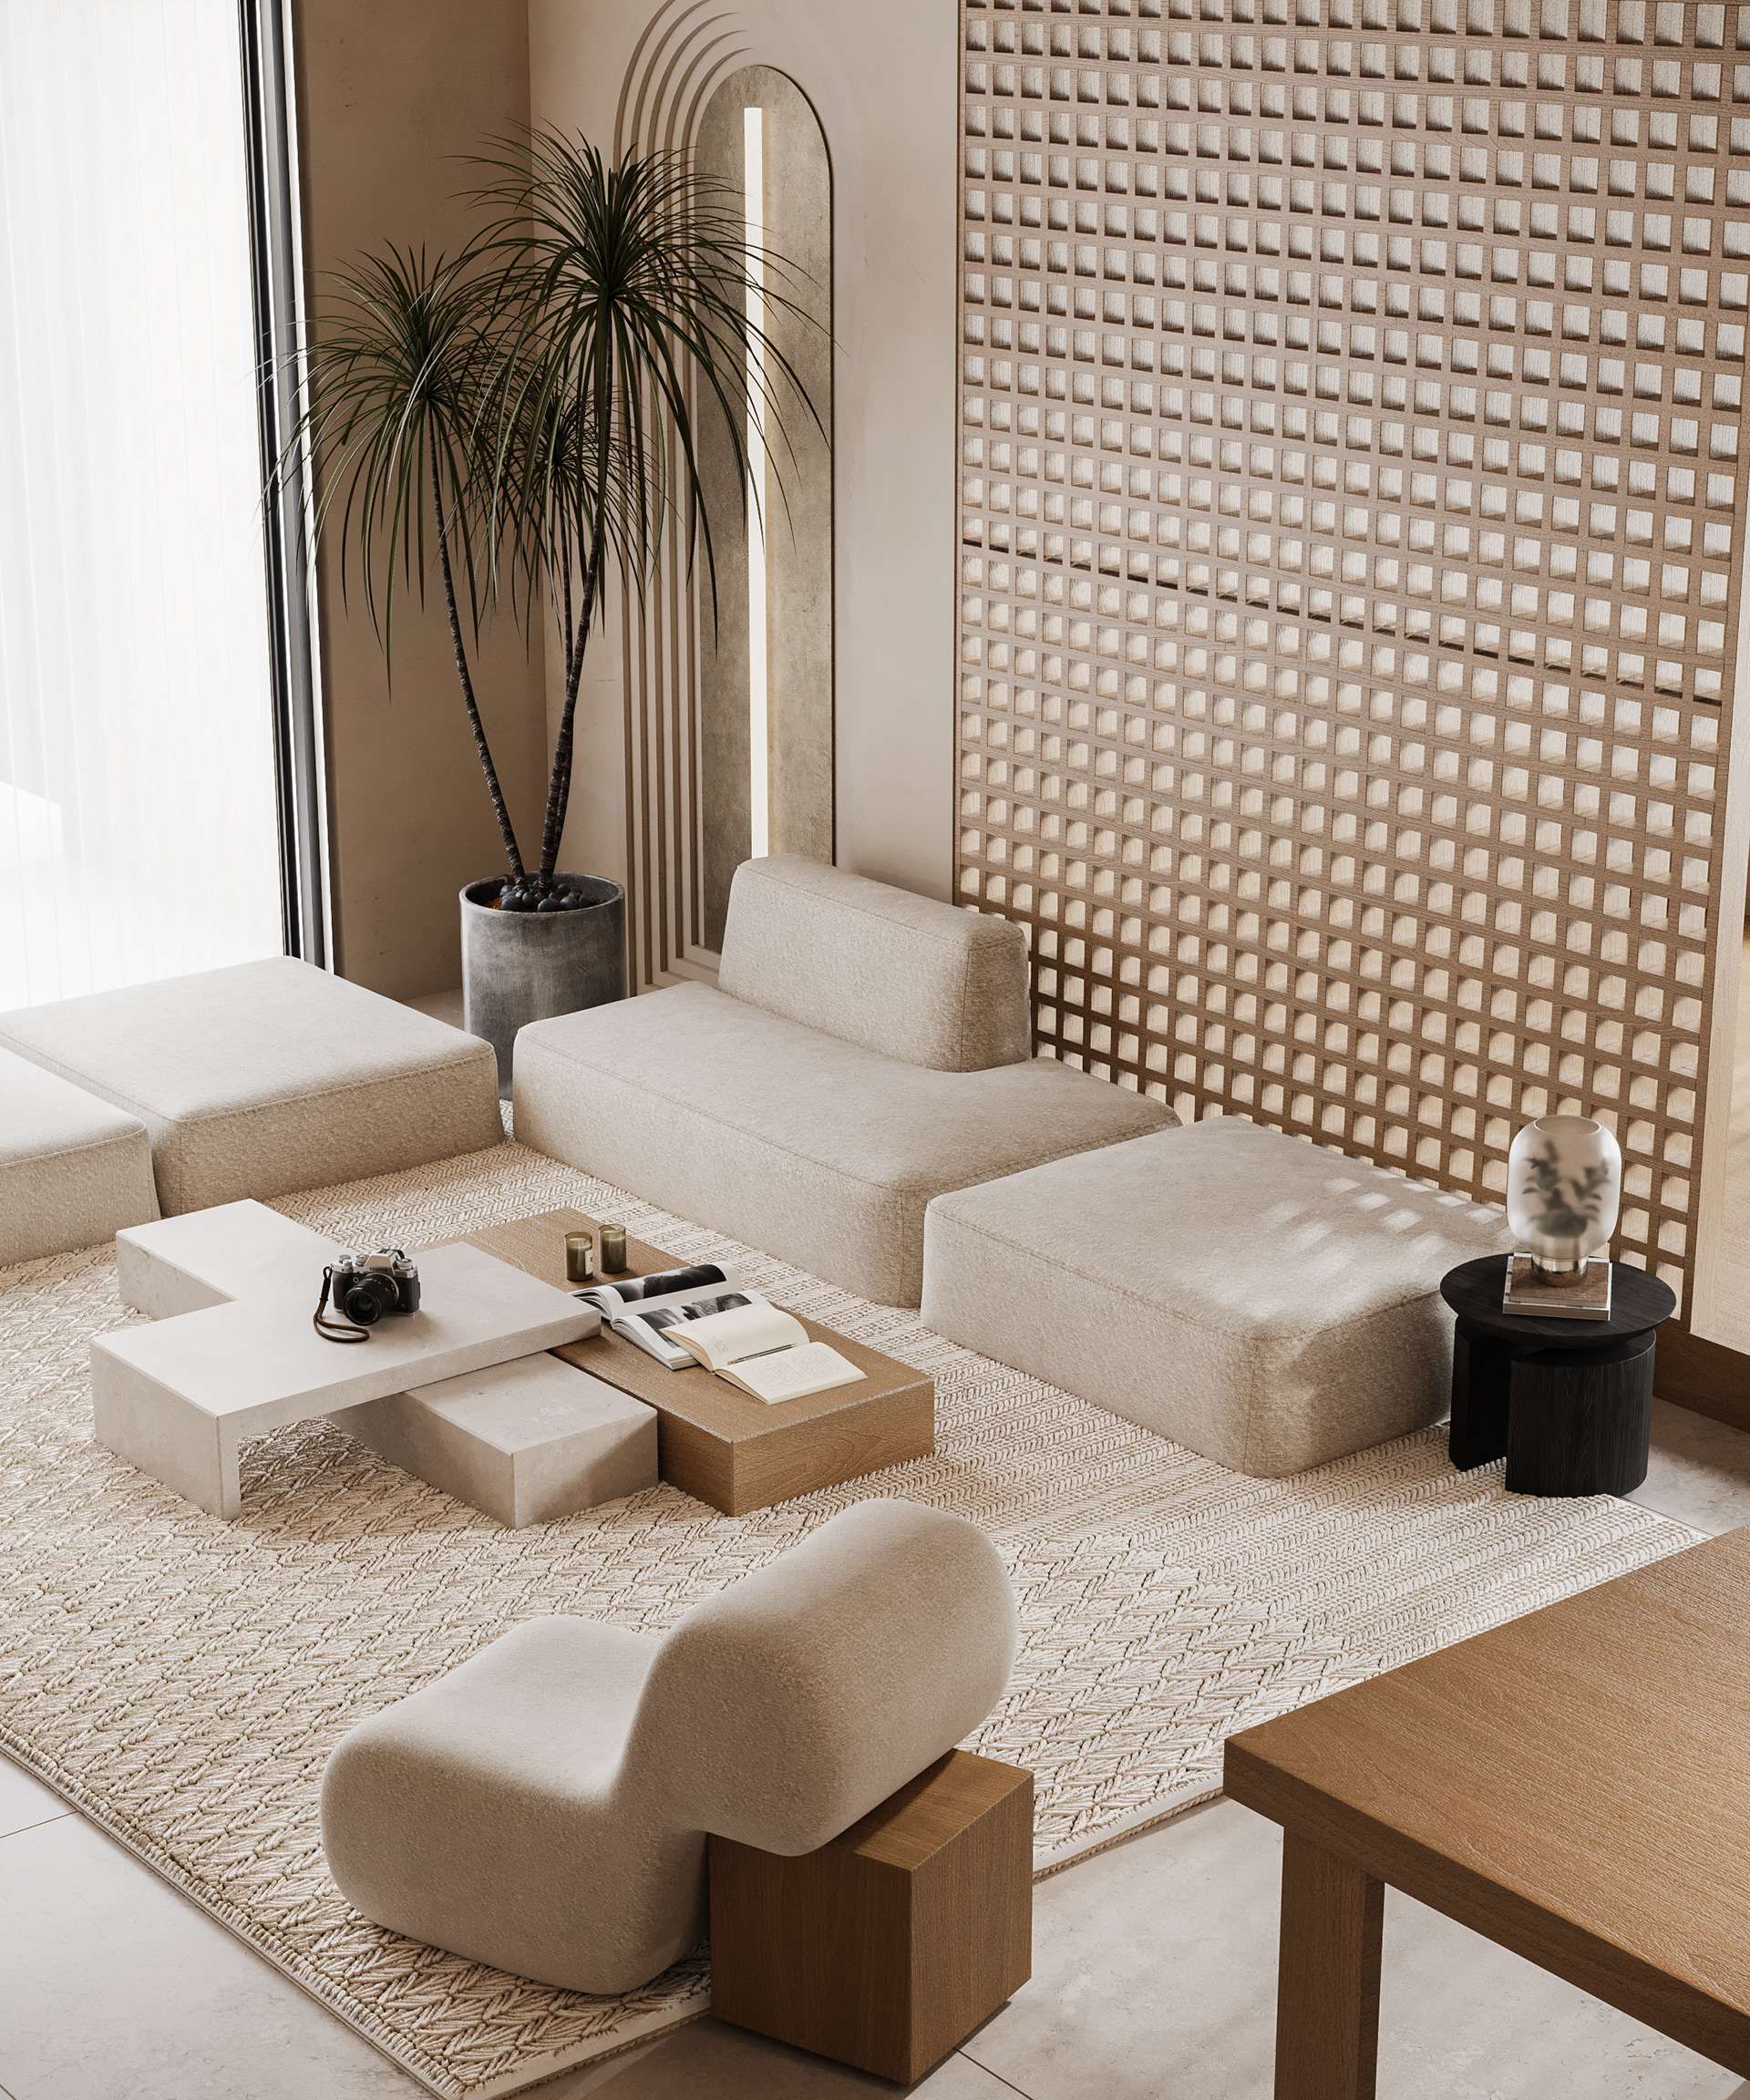 Sự kết hợp giữa tông màu trắng và gỗ tự nhiên, với thảm trang trí nhẹ nhàng, tạo nên không gian sống thanh lịch và tối giản